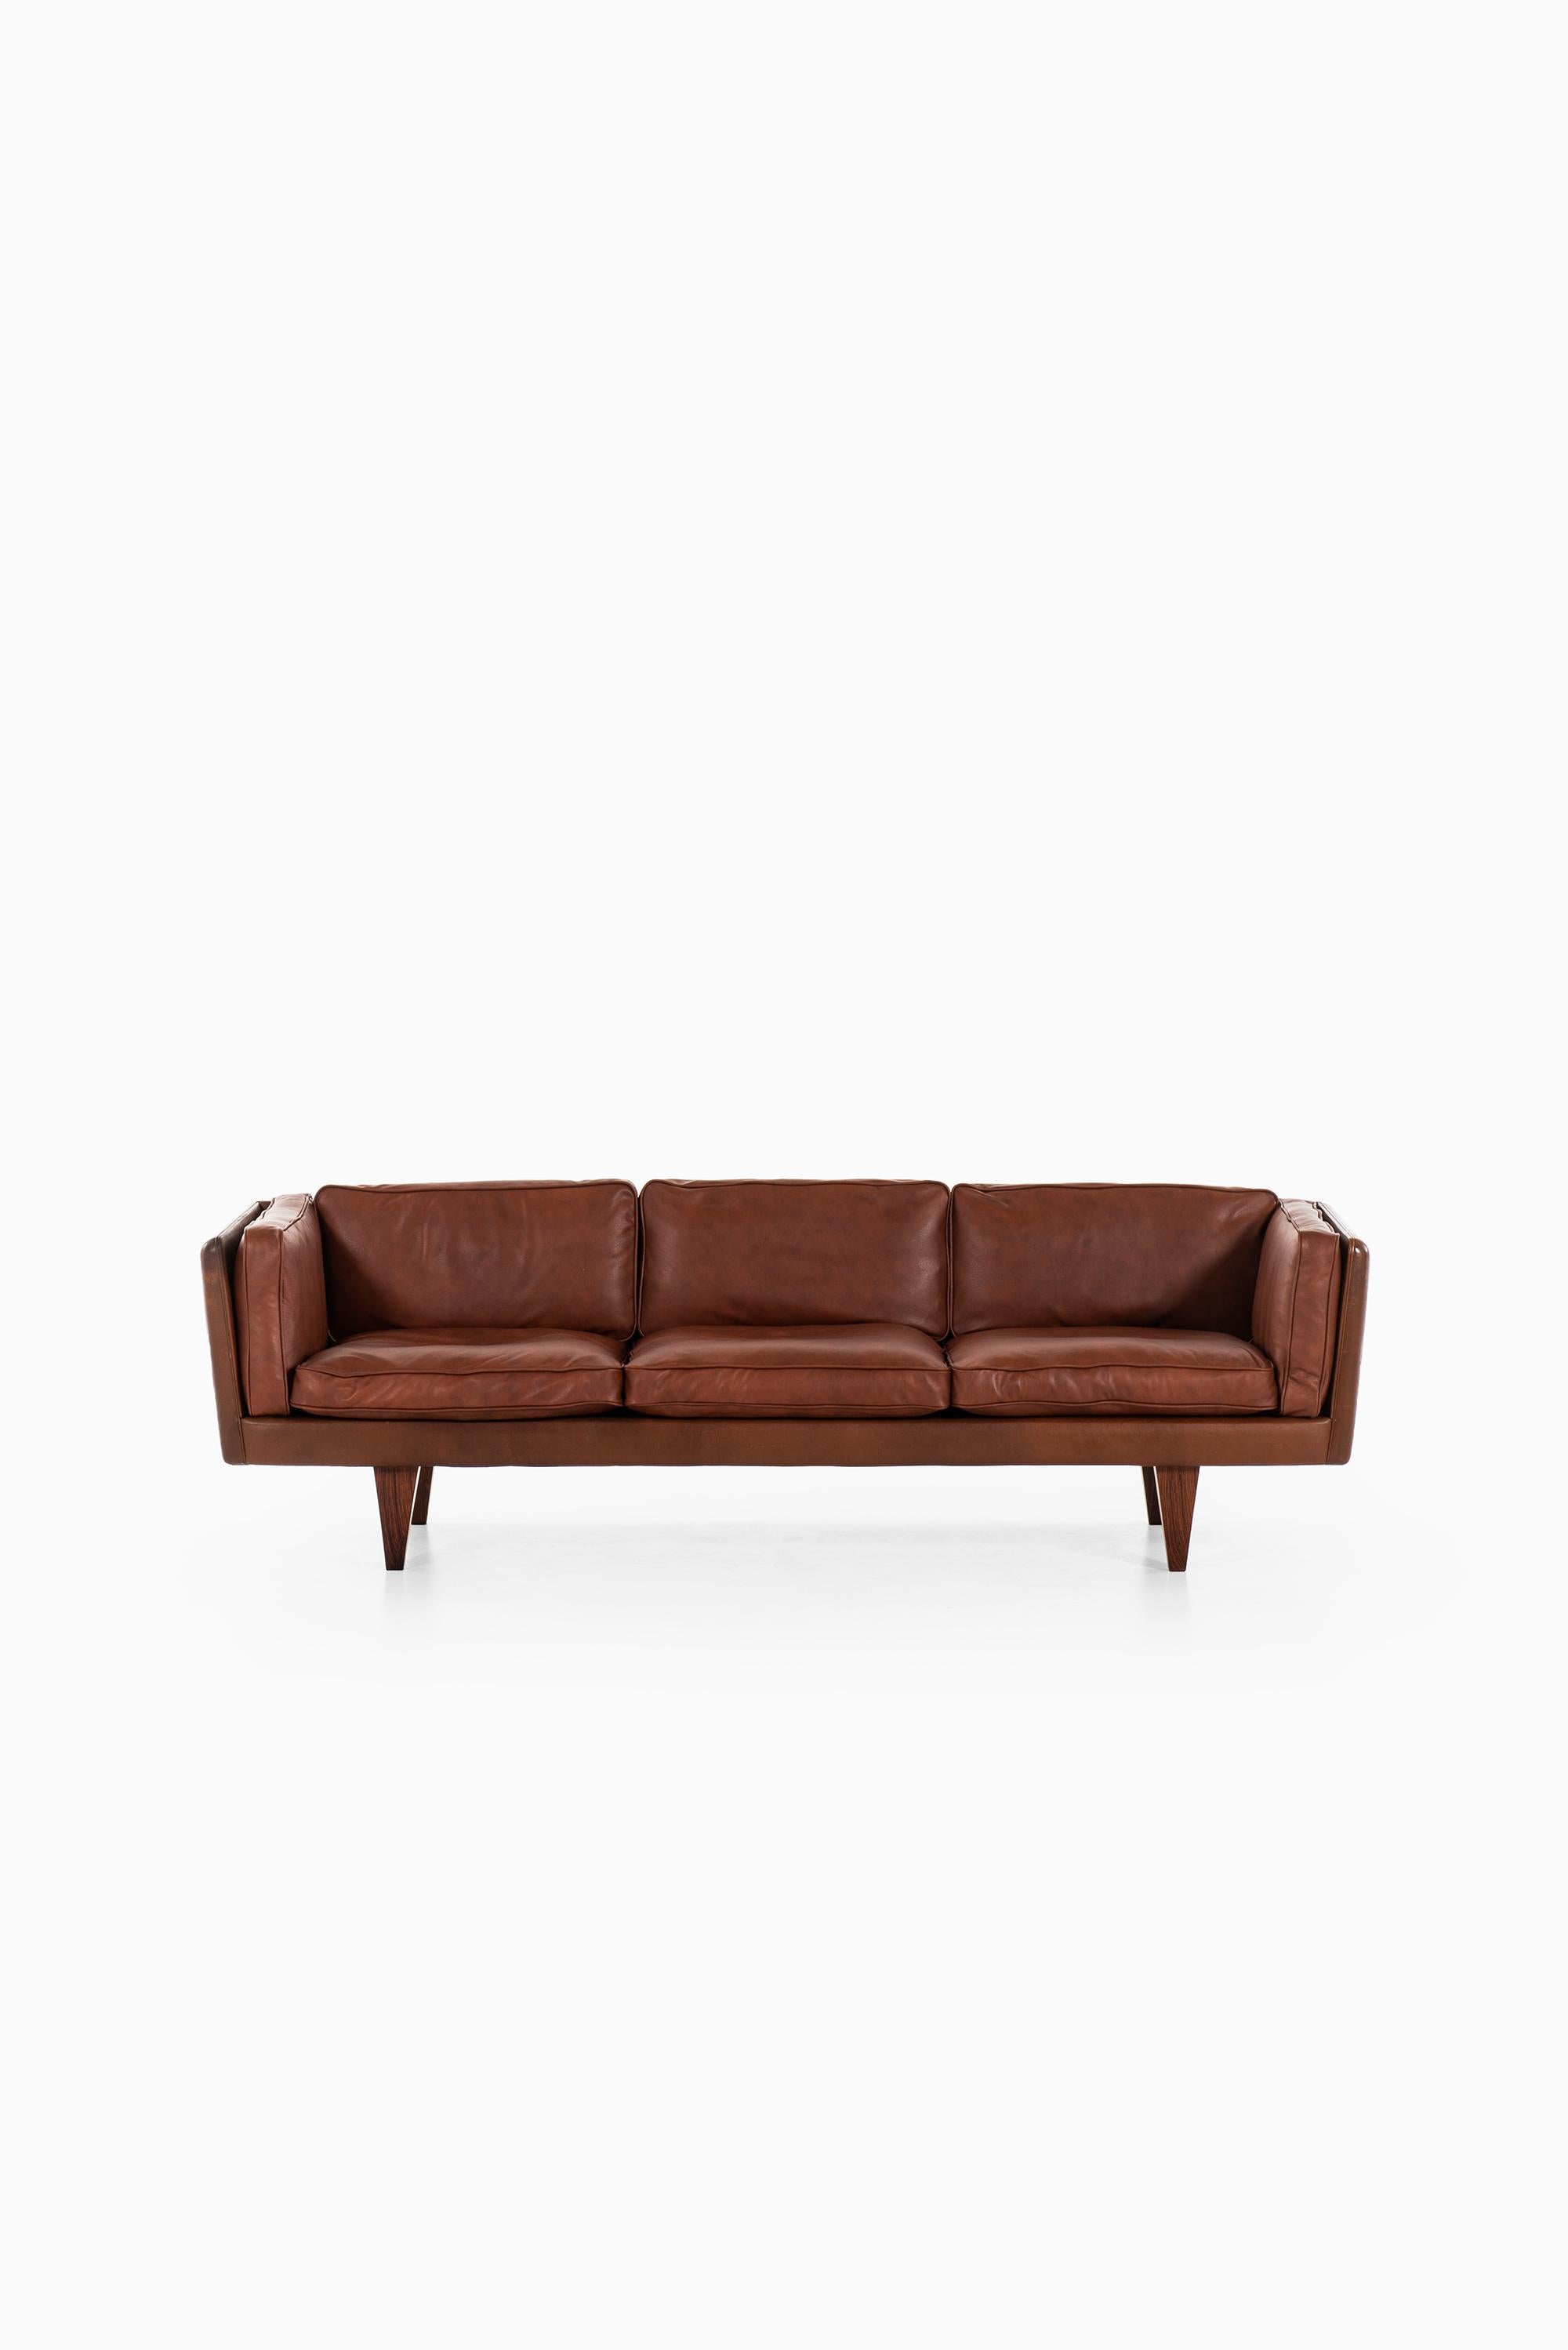 Very rare sofa model V11 designed by Illum Wikkelsø. Produced by Holger Christiansen in Denmark.